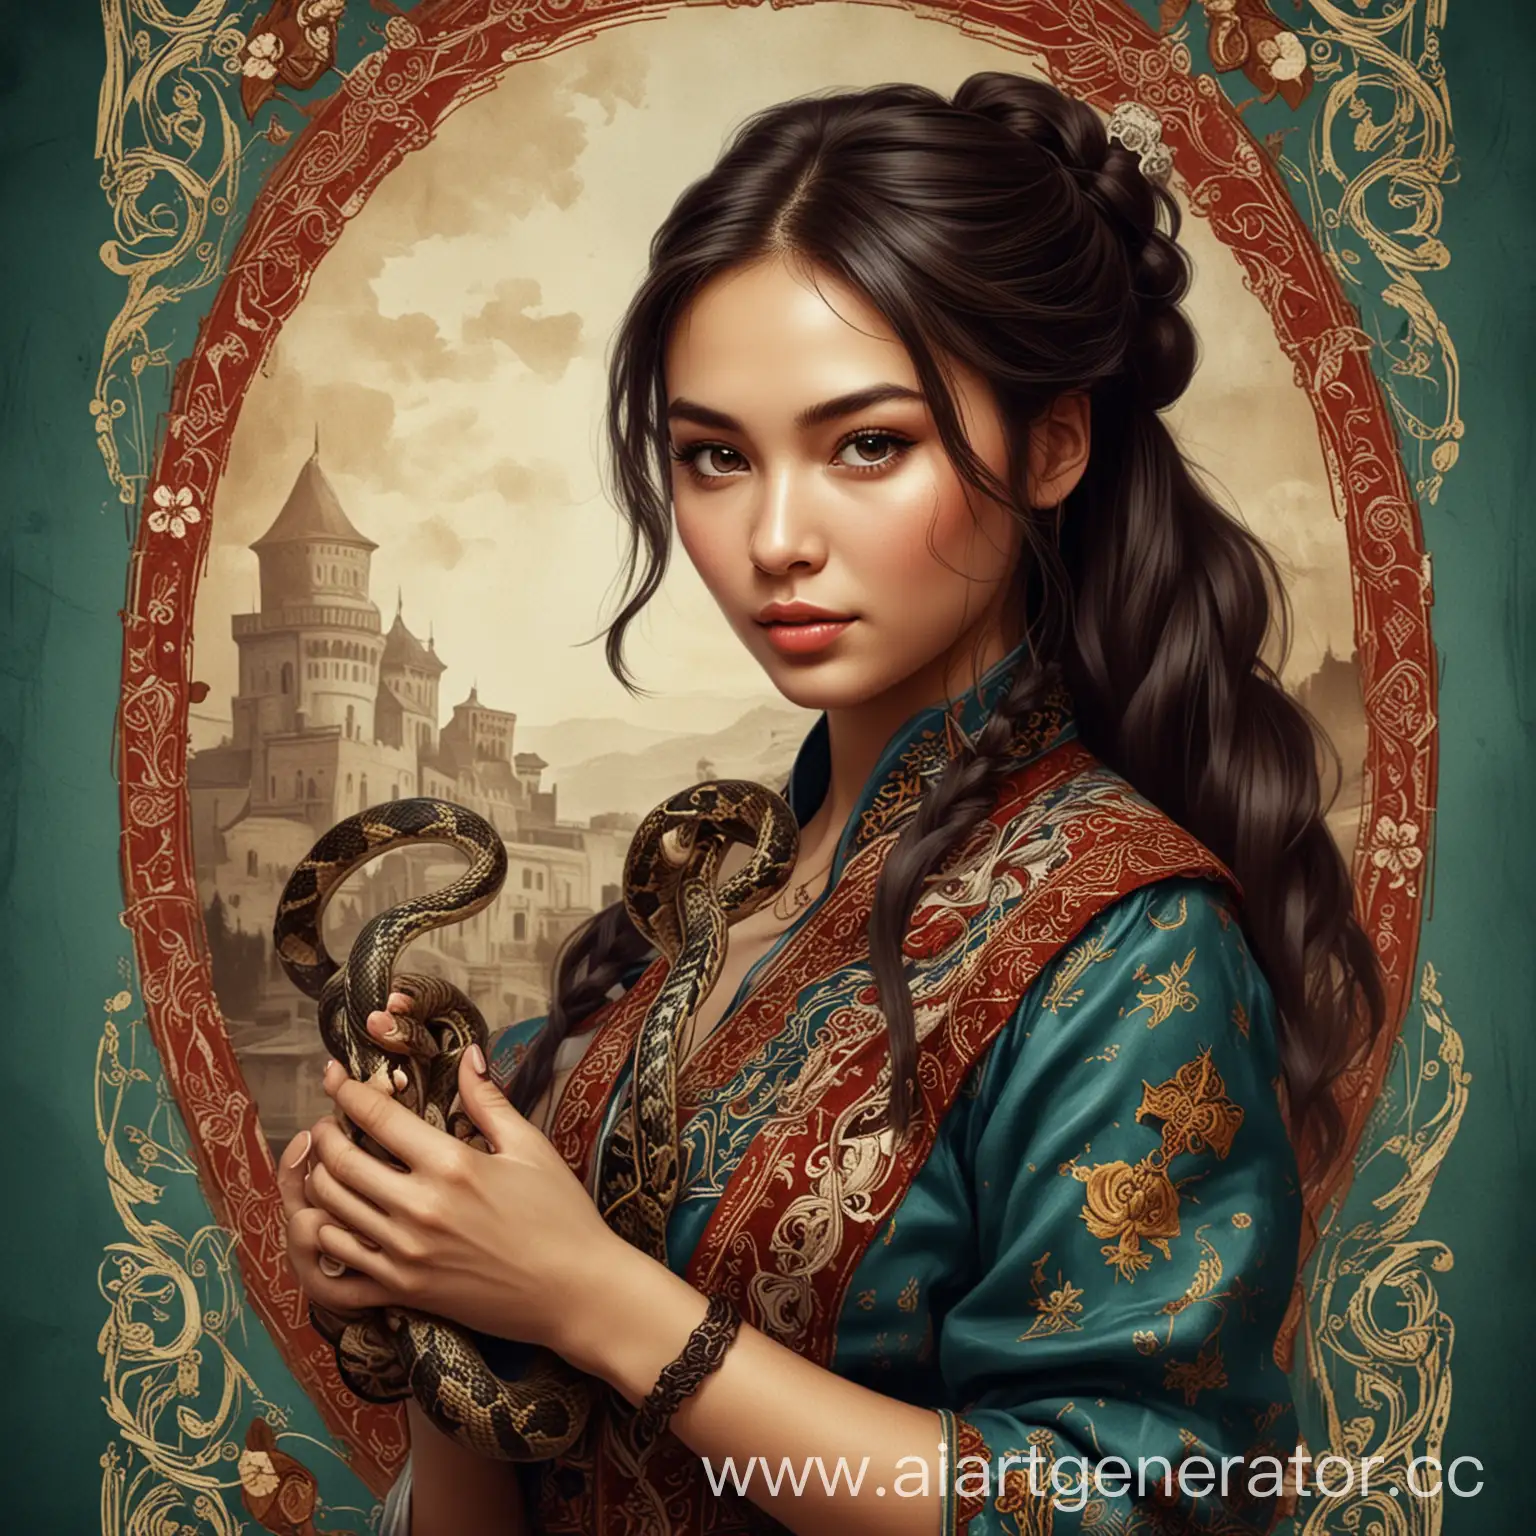 Карточка в стиле игры "Клуб романтики" с девушкой- казашкой, которая держит в руке змею.